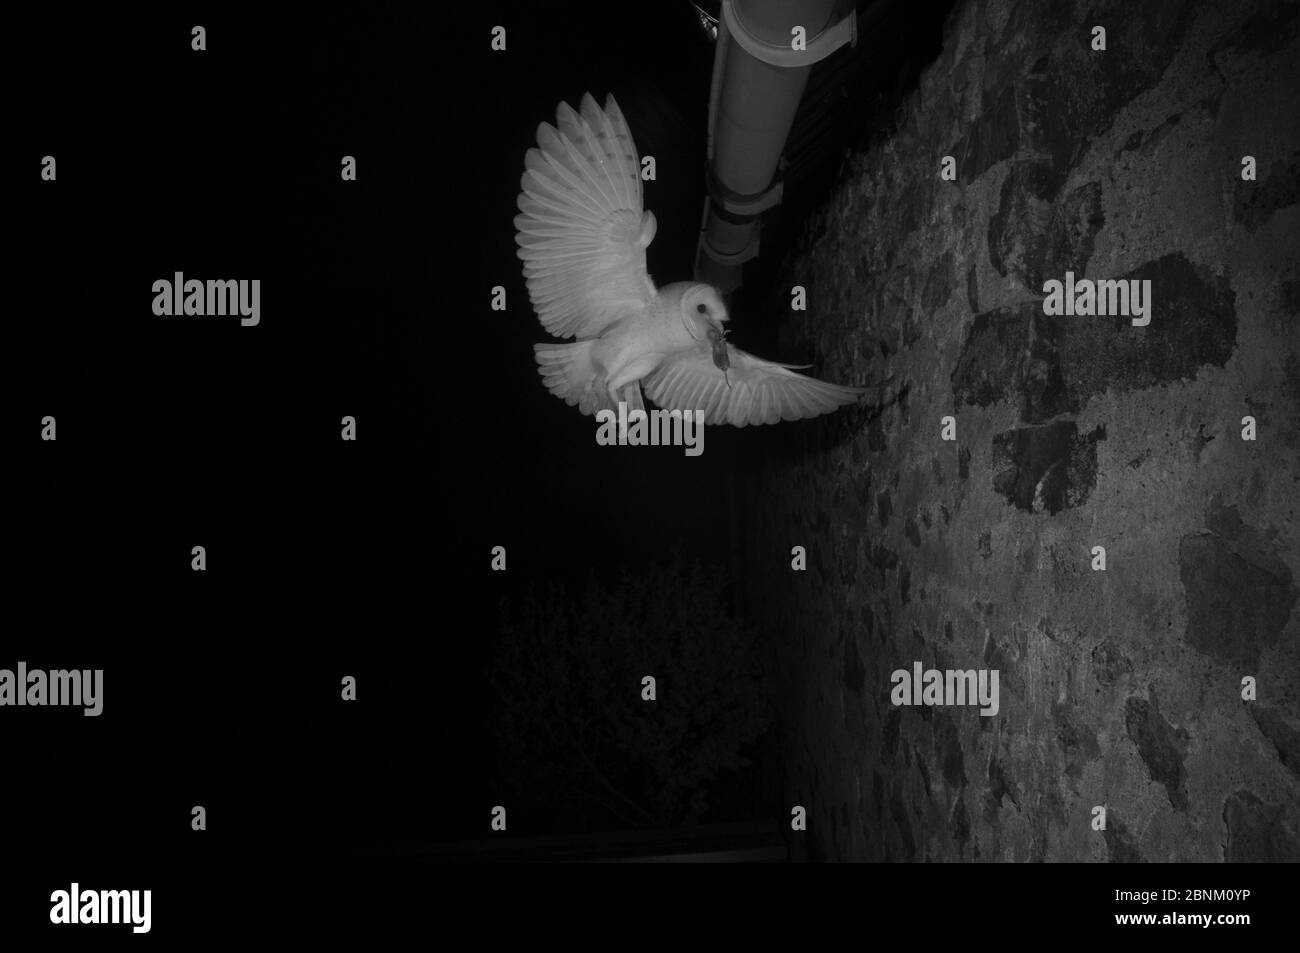 La chouette de la grange (Tyto alba) qui vole pour nicher dans les avant-bouées avec des proies, prise avec lumière infrarouge la nuit France, juin. Banque D'Images